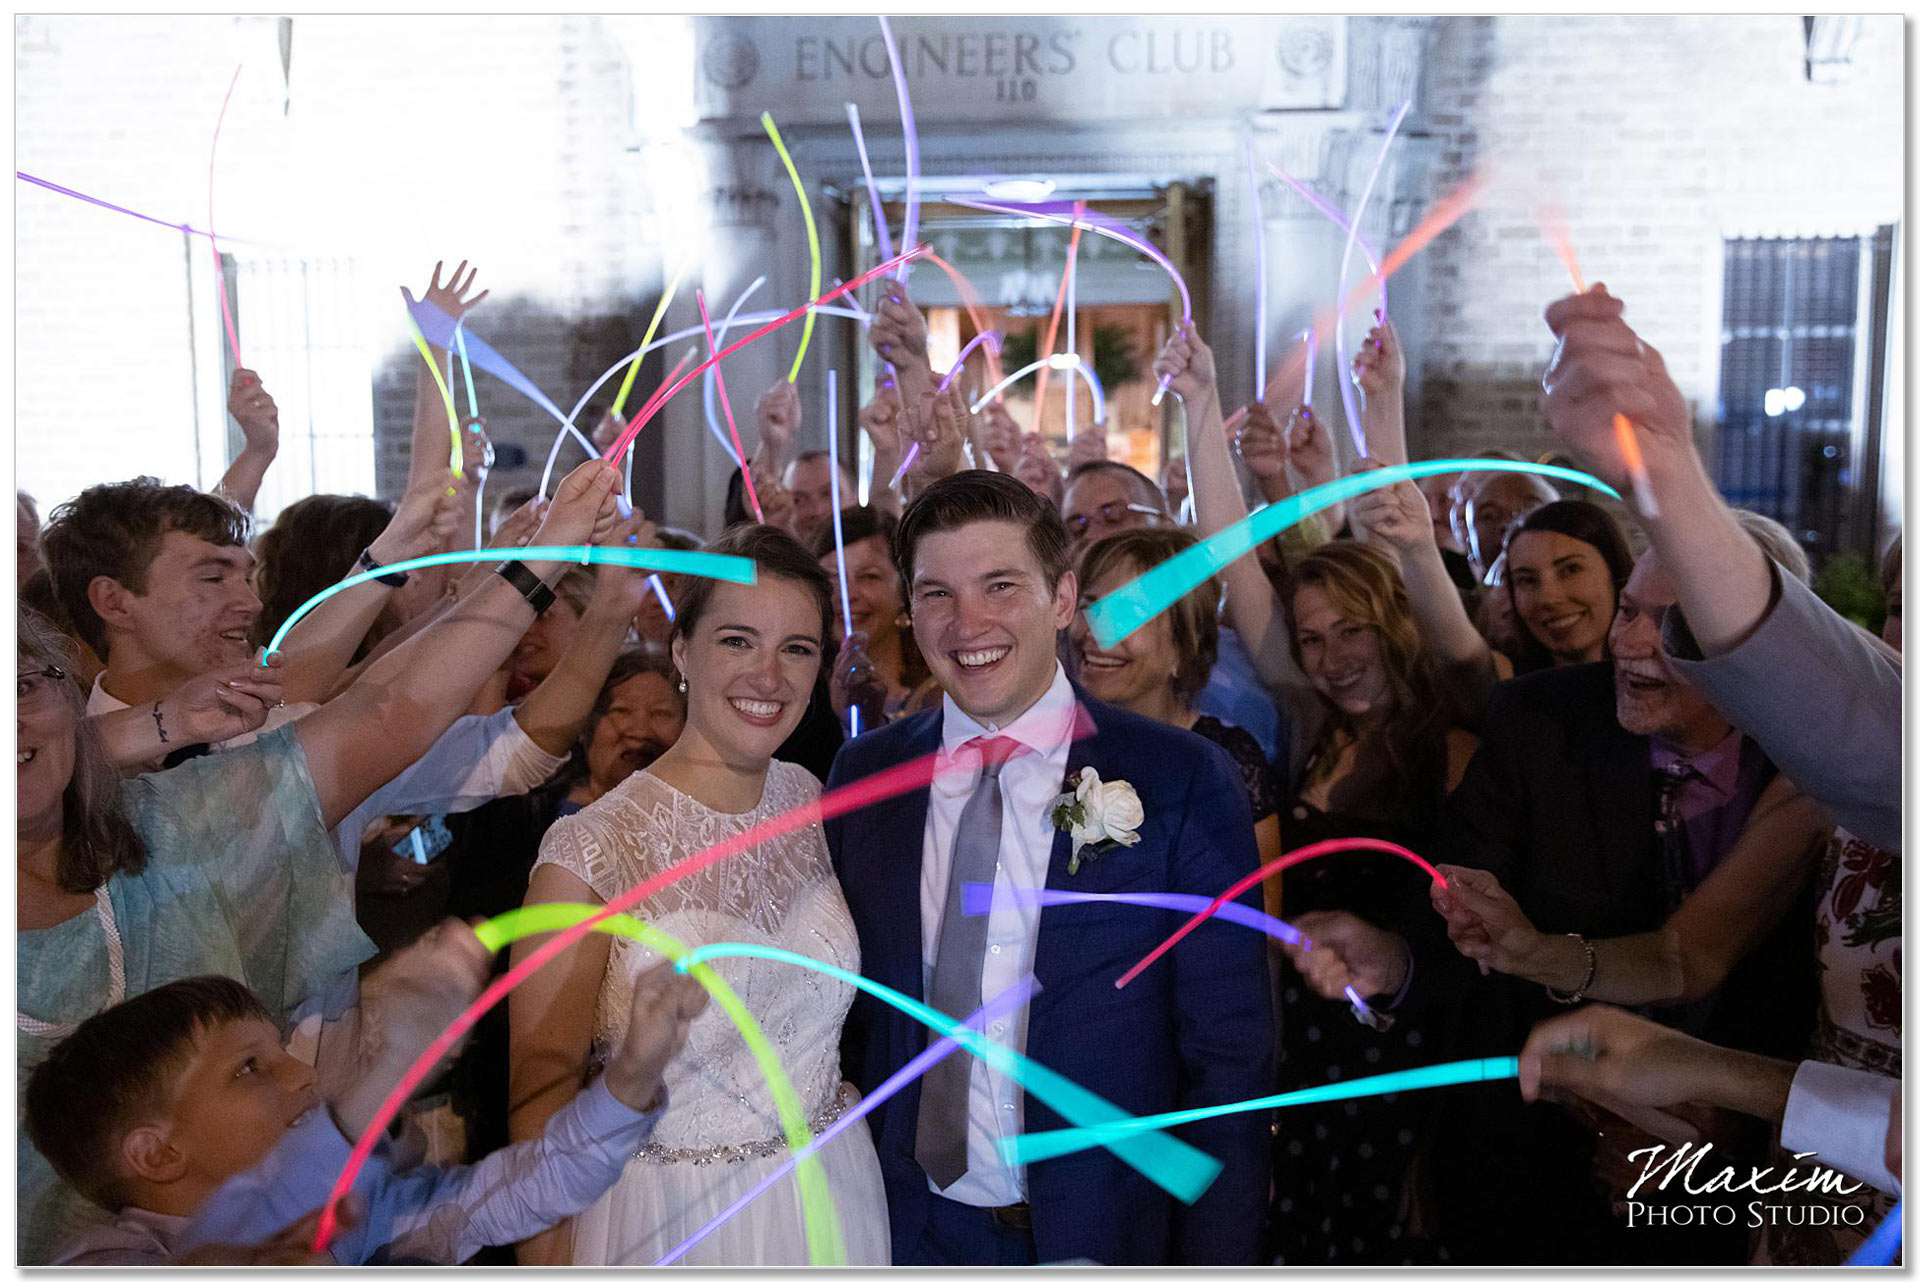 Engineers Club Wedding reception glowsticks exit